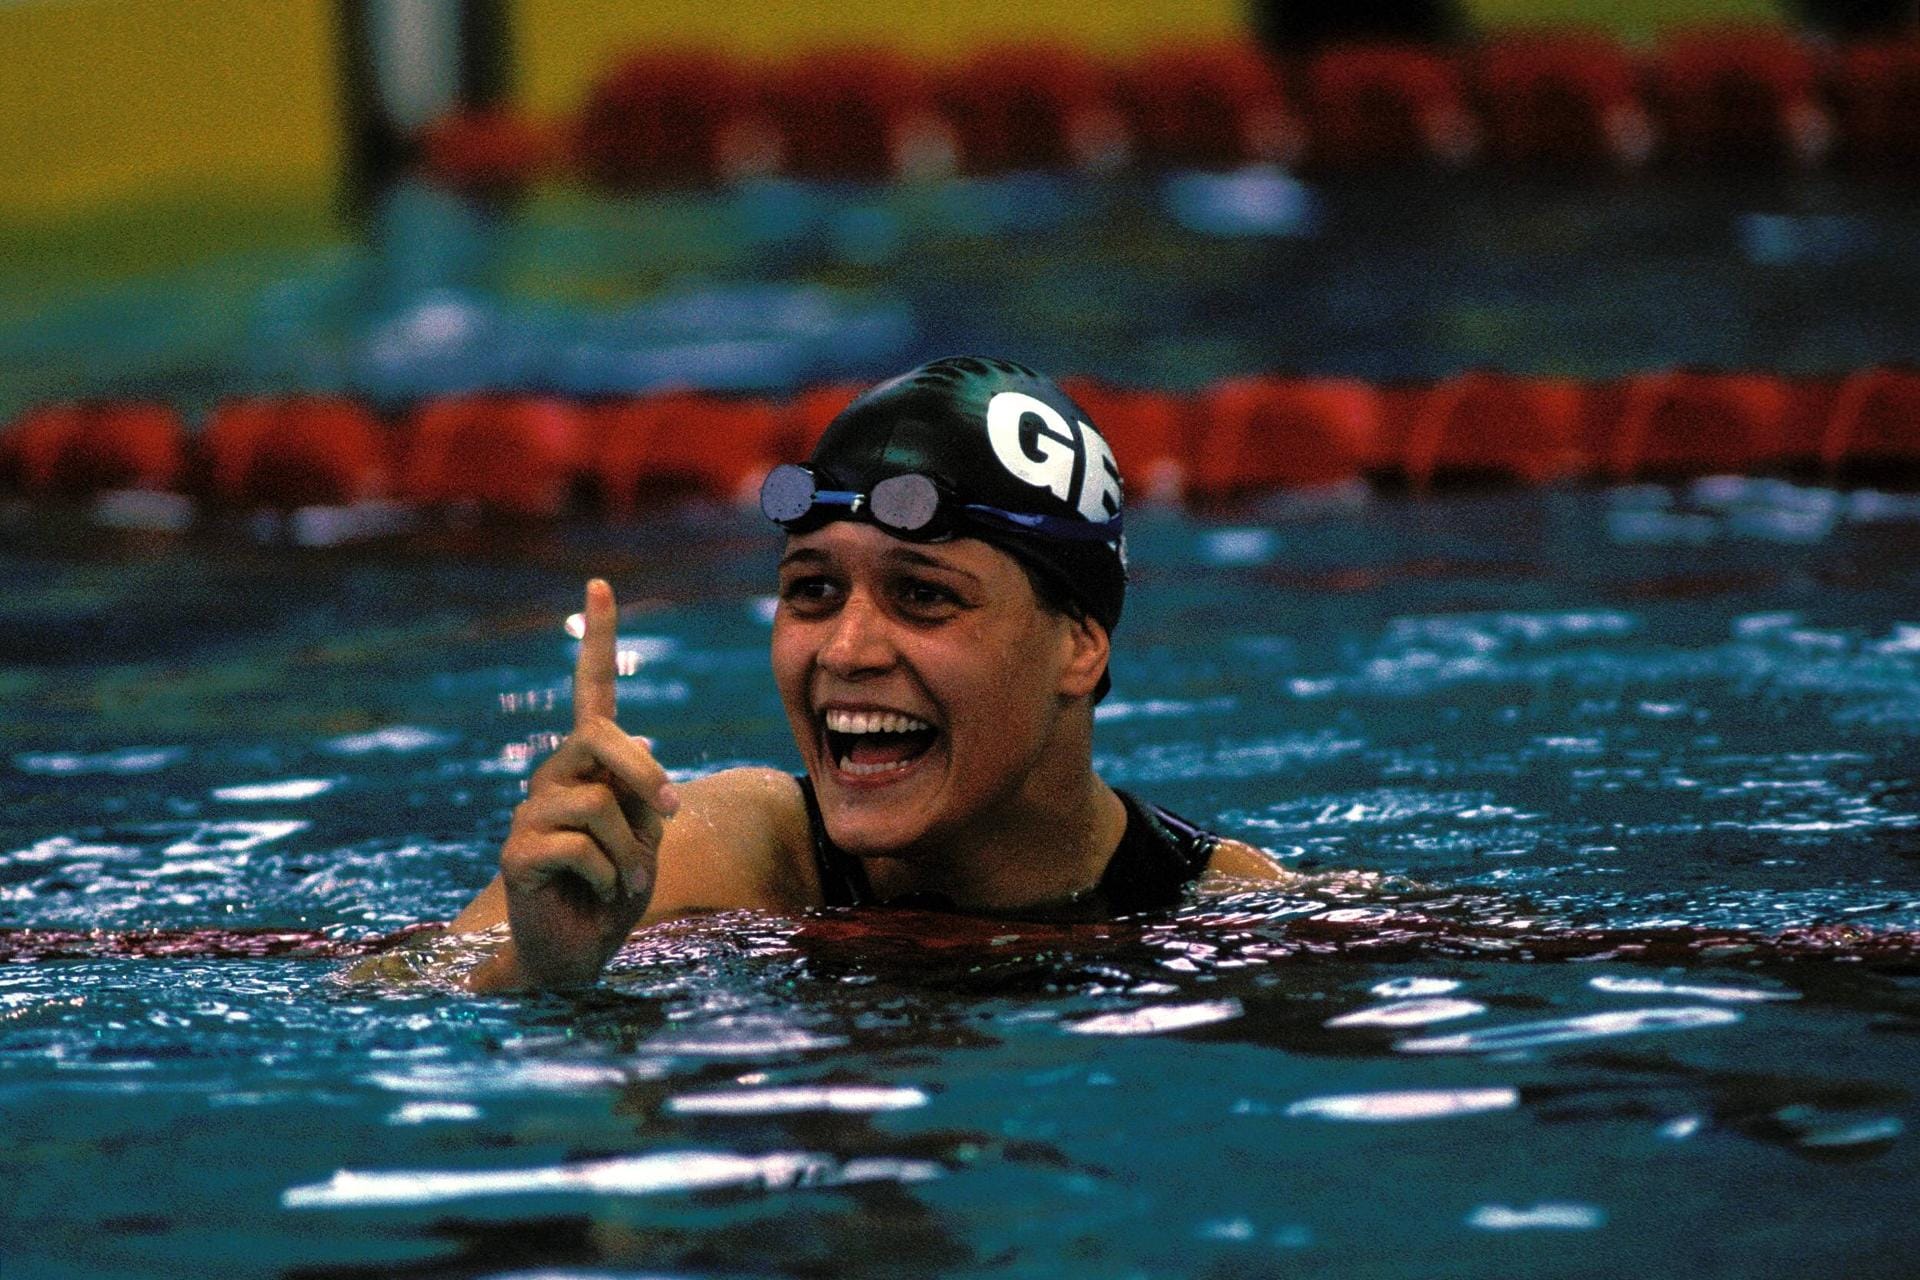 Sandra Völker schwamm 1996 bei den Olympischen Spielen in Atlanta zu drei Medaillen. Sie holte die Silbermedaille über 100 Meter Freistil, die Bronzemedaille über 50 Meter Freistil und ebenfalls Bronze mit der 4x100-Meter-Freistilstaffel. Zudem wurde sie 1997 Weltmeisterin über 50 Meter Freistil.